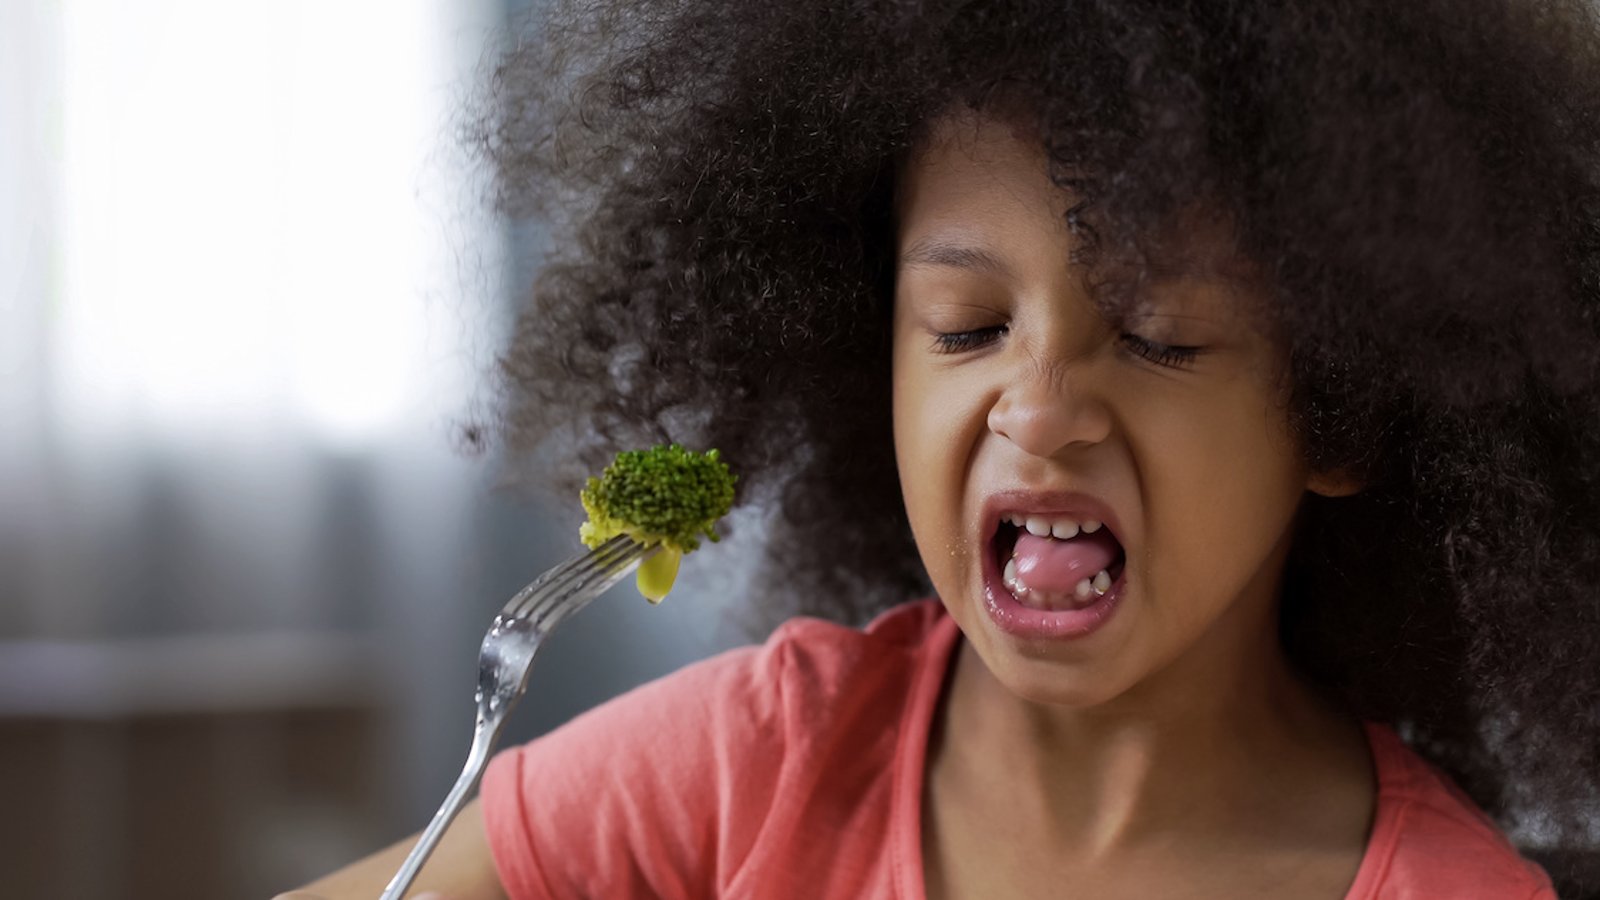 Voici pourquoi la plupart des enfants n’aiment pas le brocoli, le chou-fleur et le chou de Bruxelles